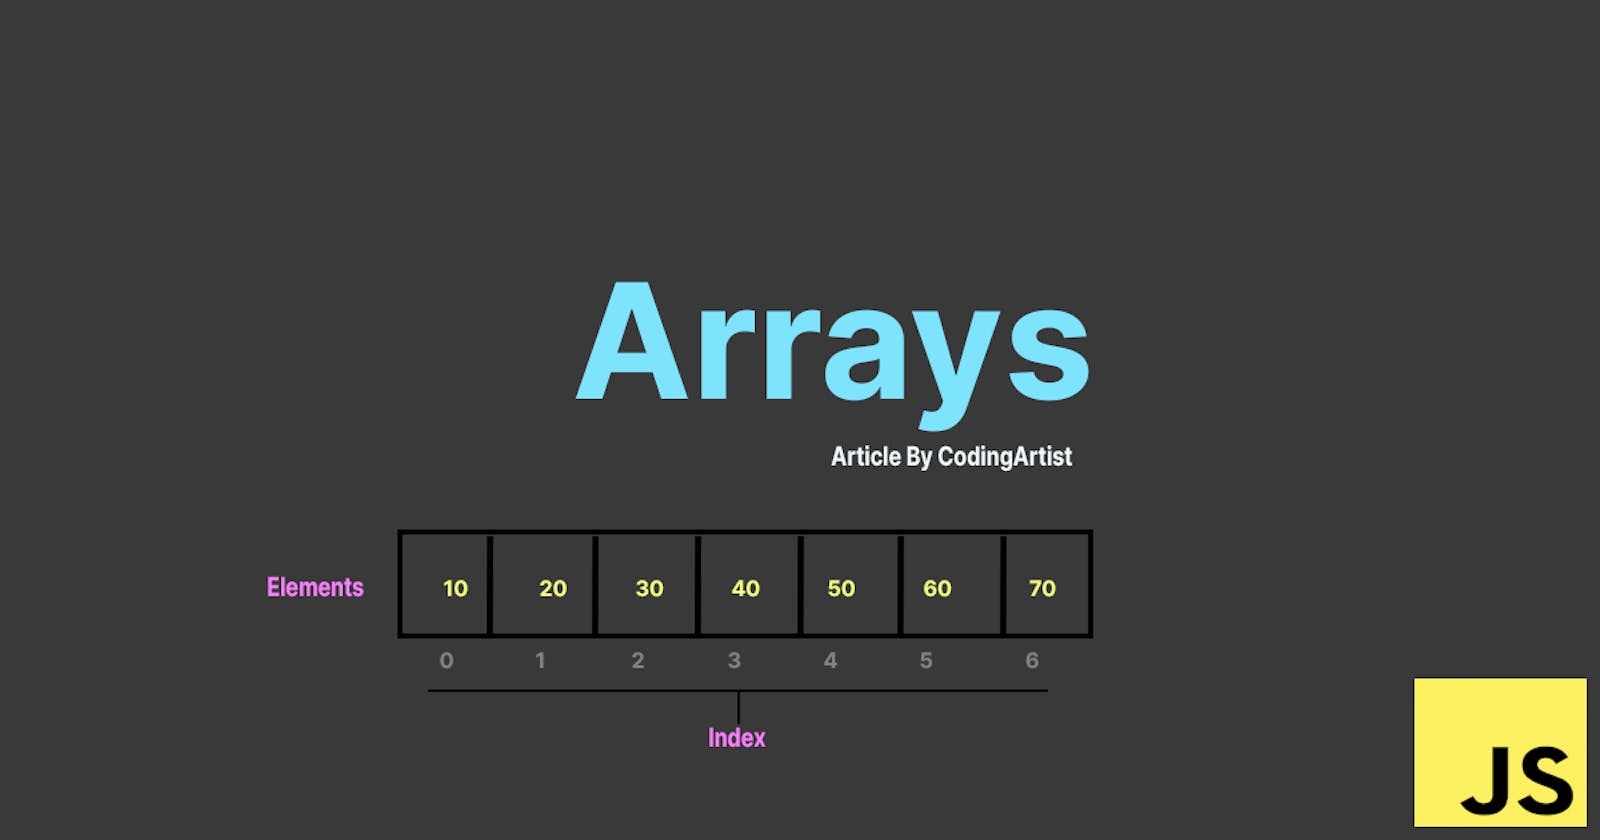 Arrays in JS